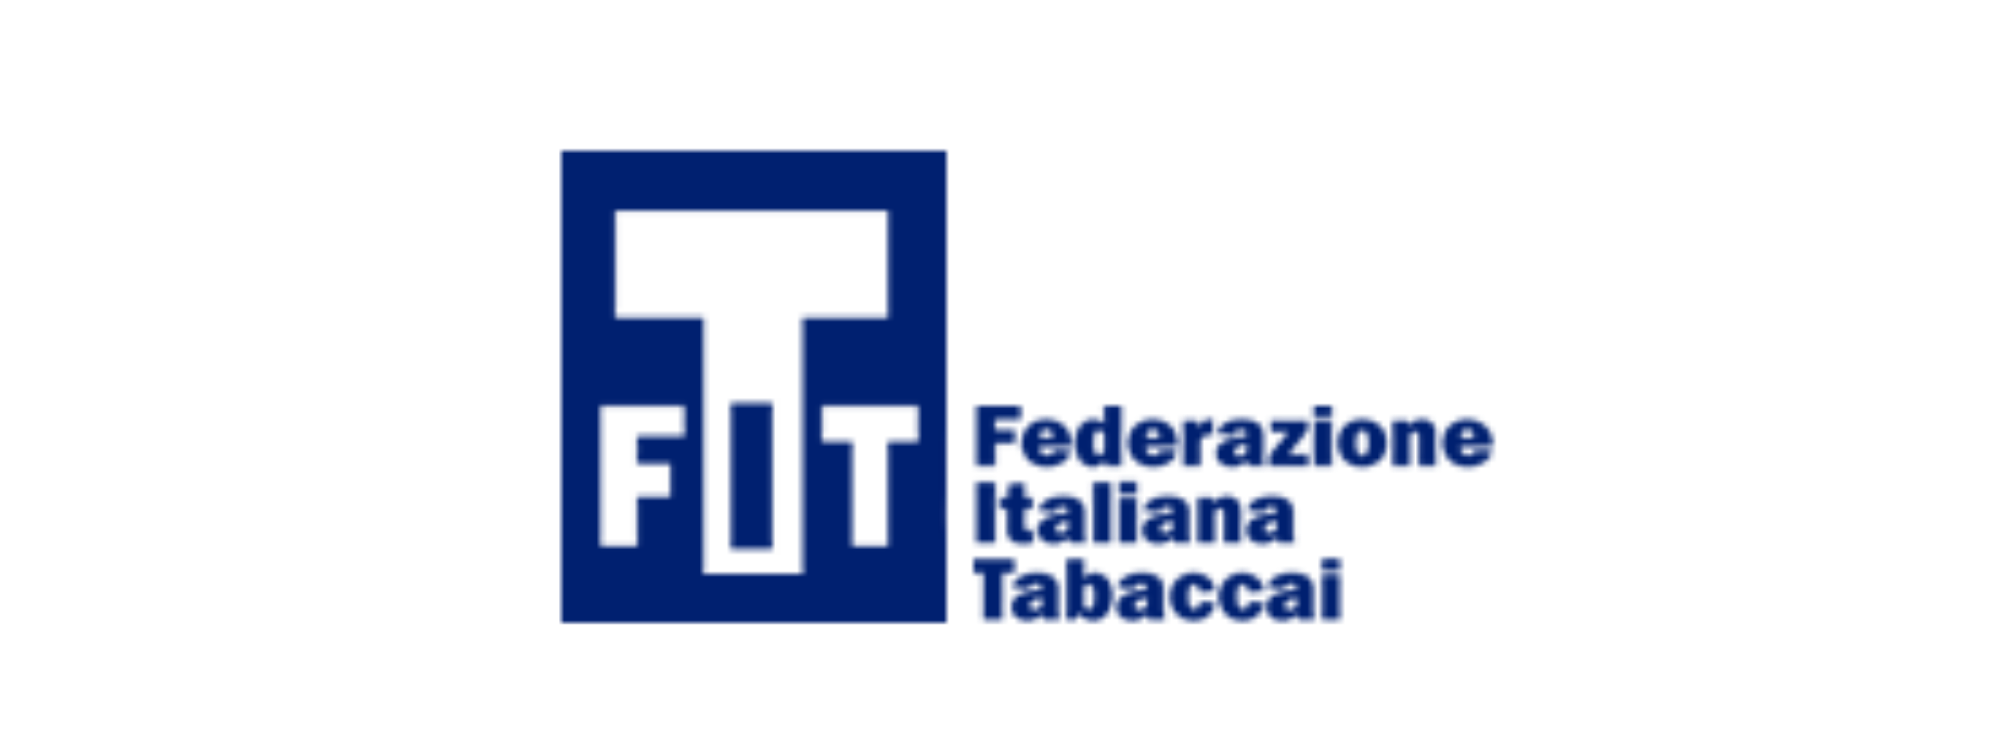 FIT - Federazione Italiana Tabaccai